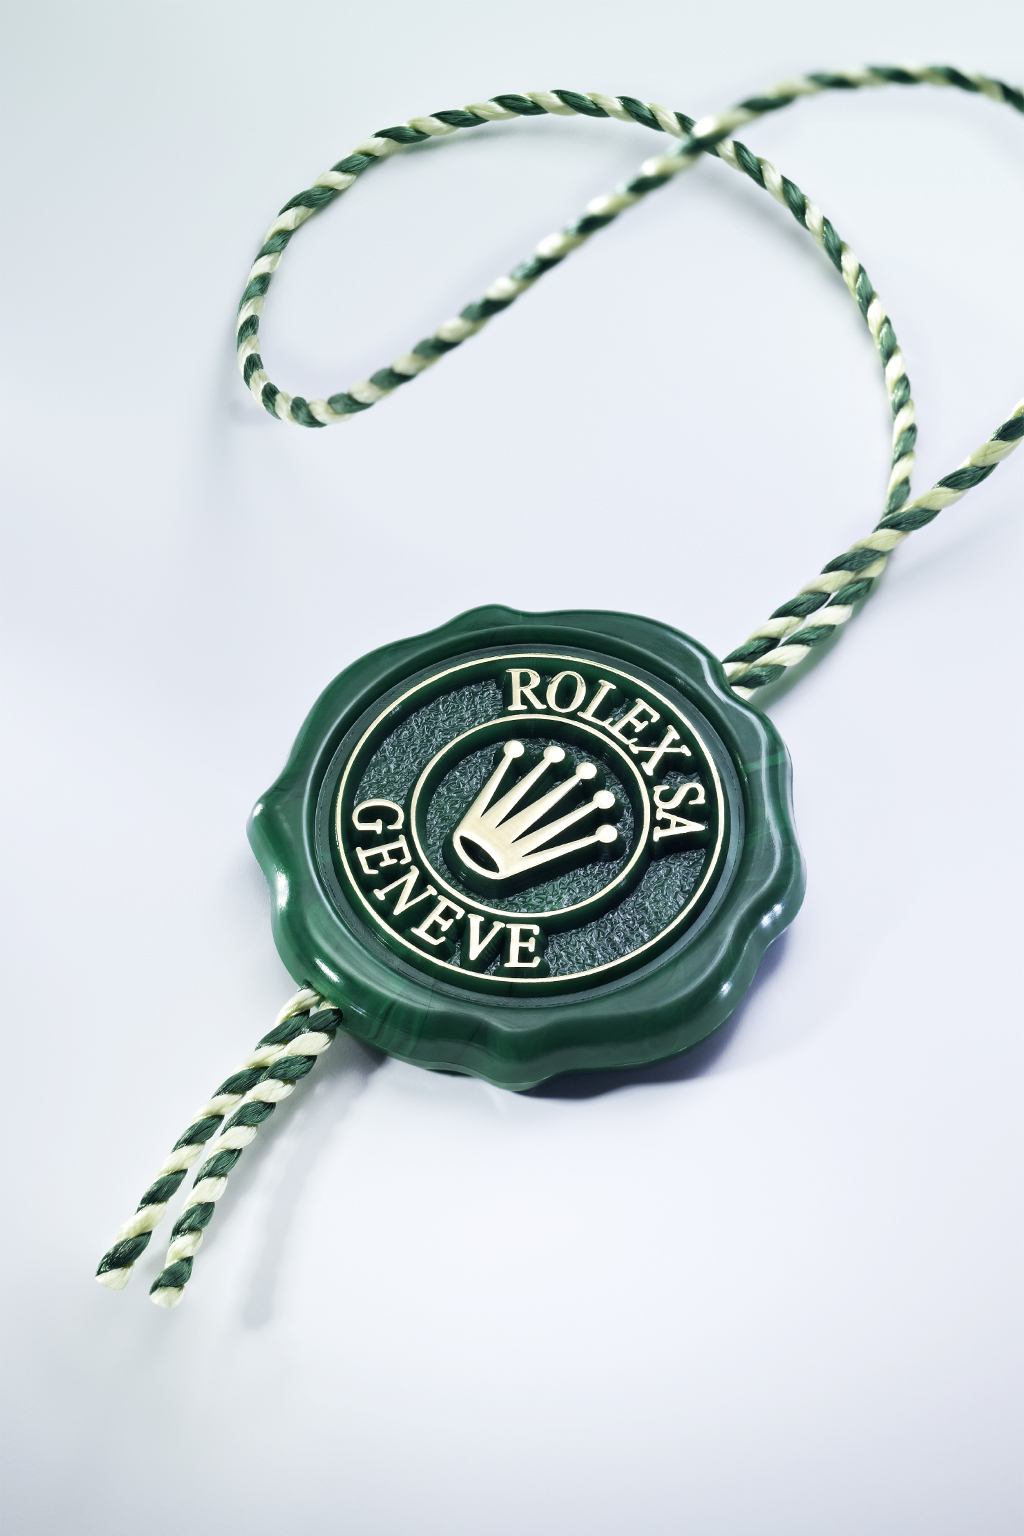 Besondere Merkmale CHRONOMETER DER SUPERLATIVE Das grüne Siegel Ihrer Rolex bürgt für den Status Chronometer der Superlative.